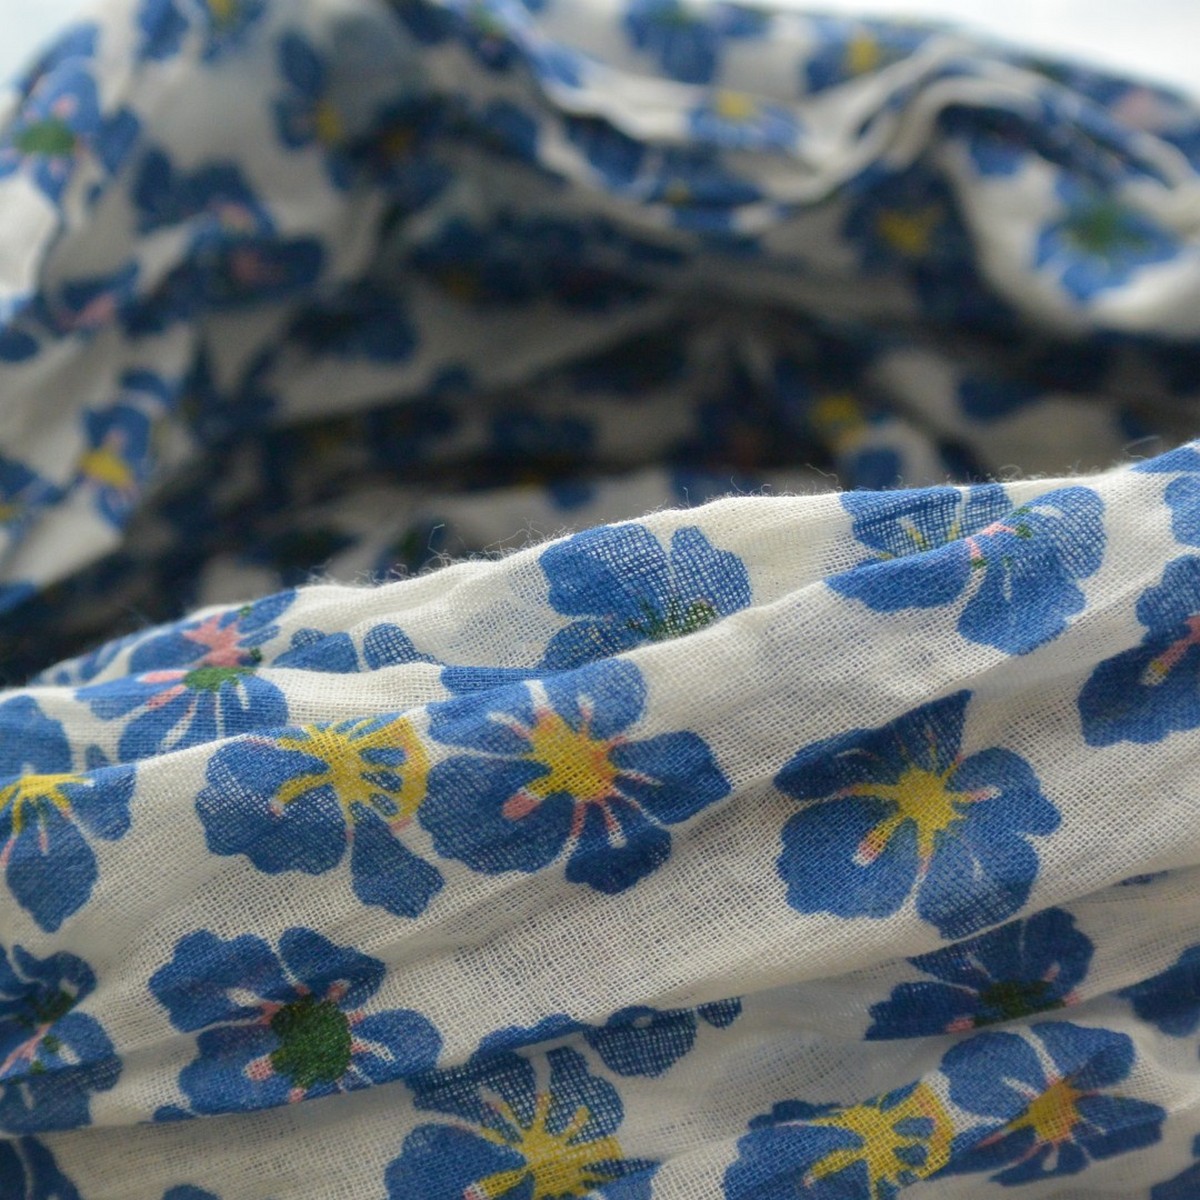 foulard zen ethic grande-etole-pansy-voile-de-coton-110x180cm une idee cadeau chez ugo et lea   (2)